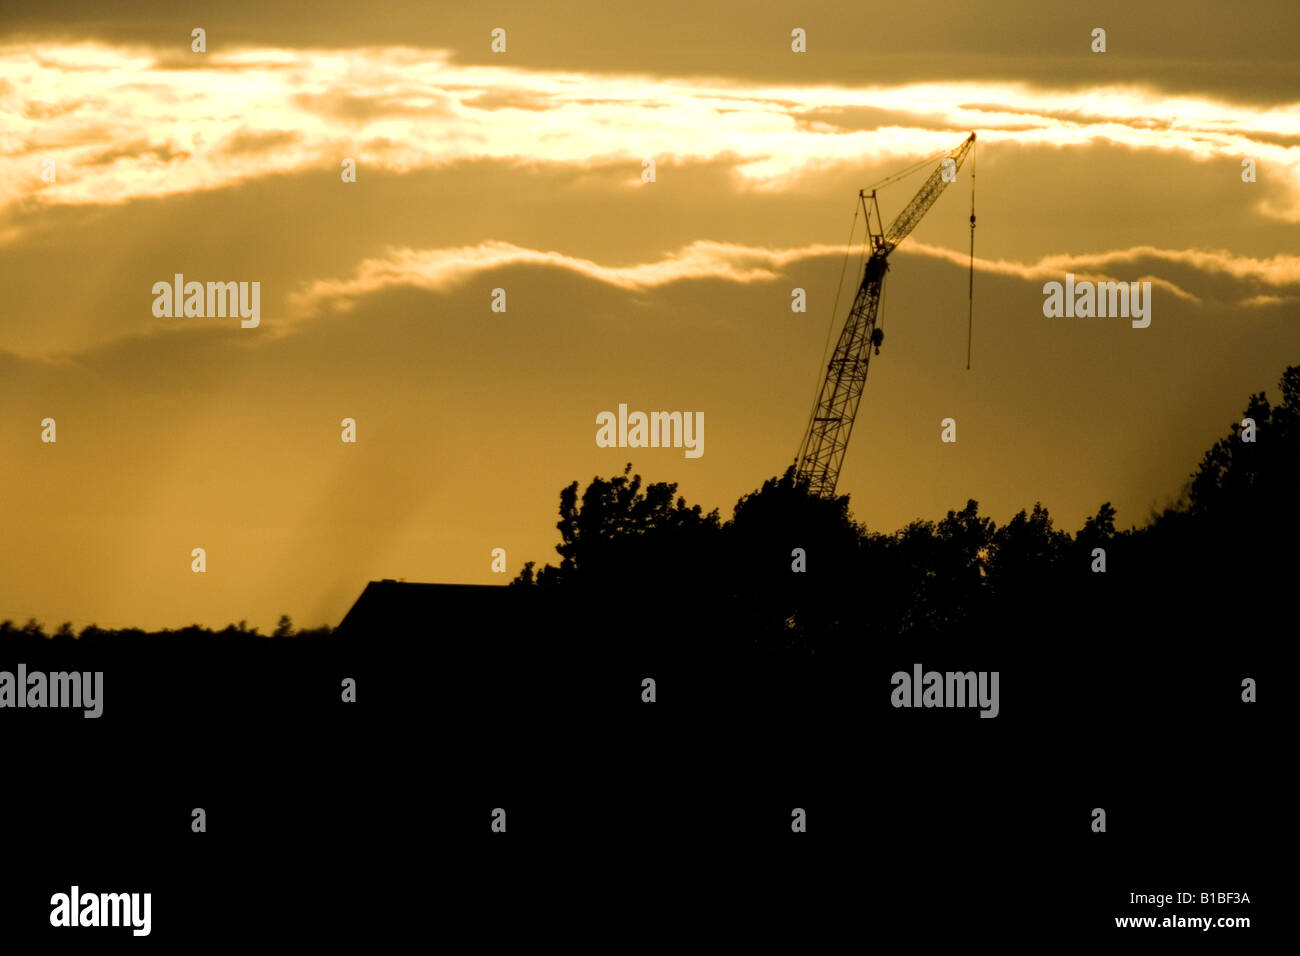 Kran-Silhouette gegen Sonnenuntergang Stockfoto